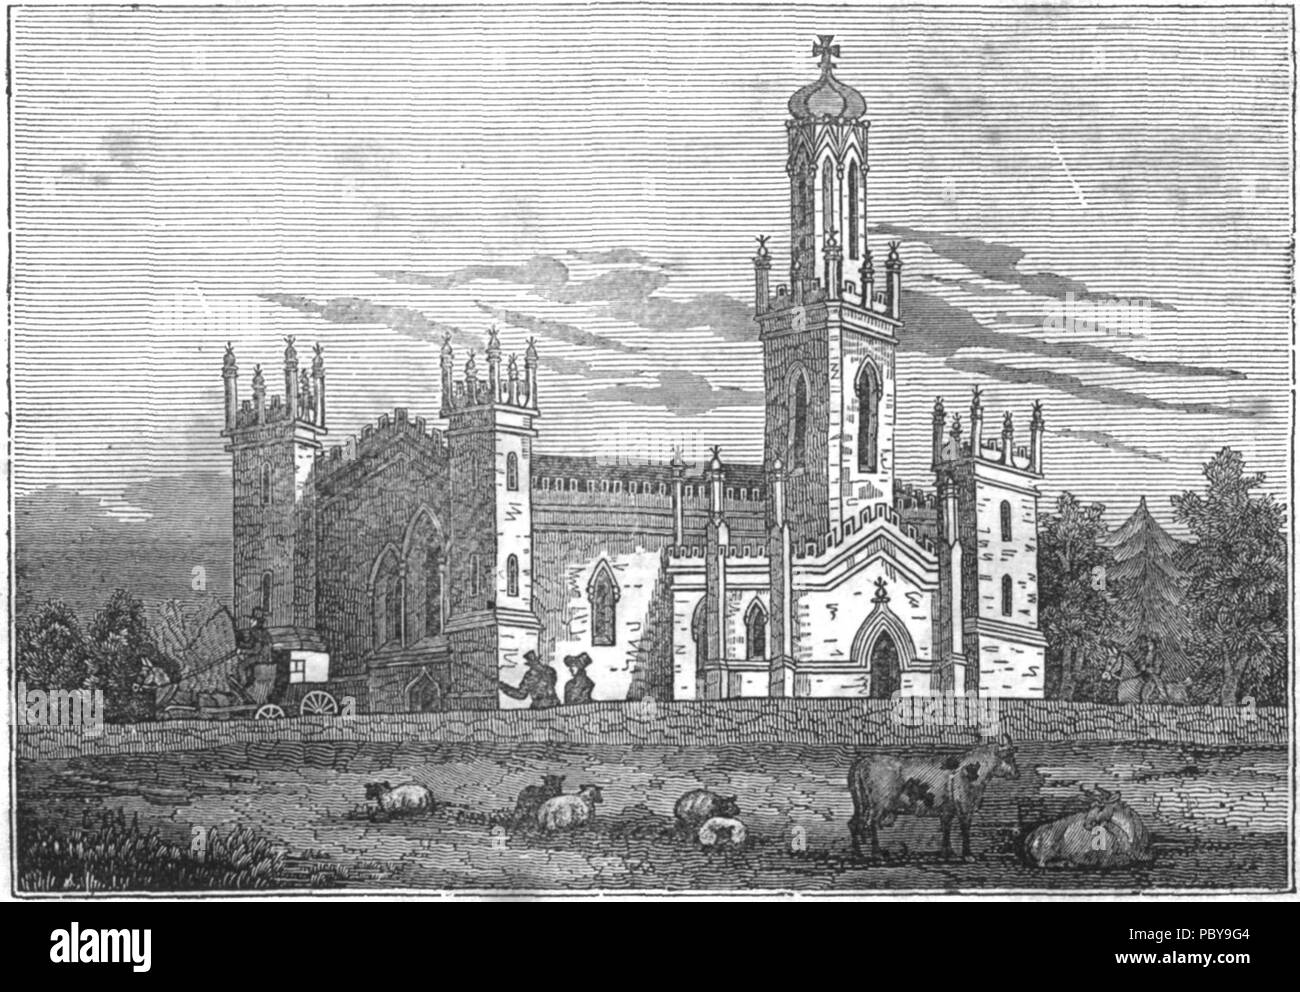 172 Dublin Penny Journal 1834-07-12 Monkstown Church by E. Heyden Stock Photo